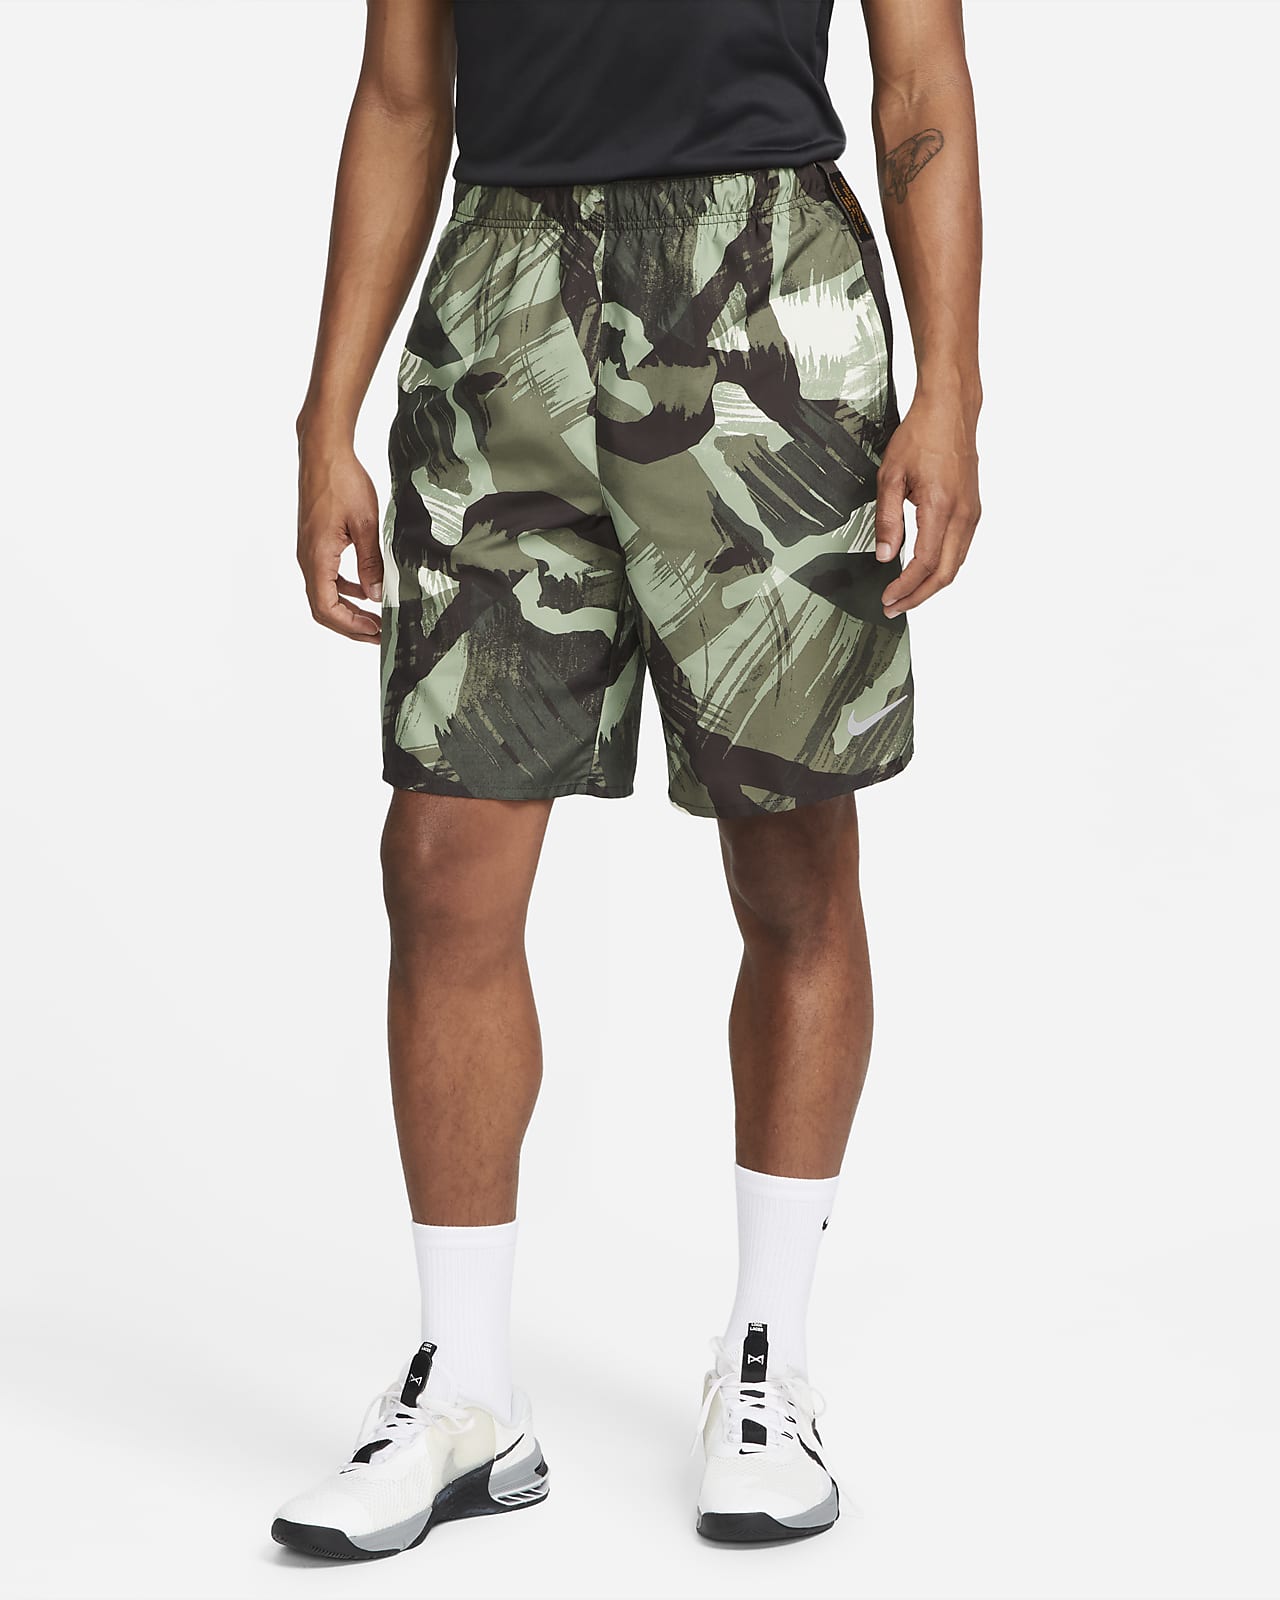 Shorts versátiles sin forro de 23 cm para hombre Nike Challenger.